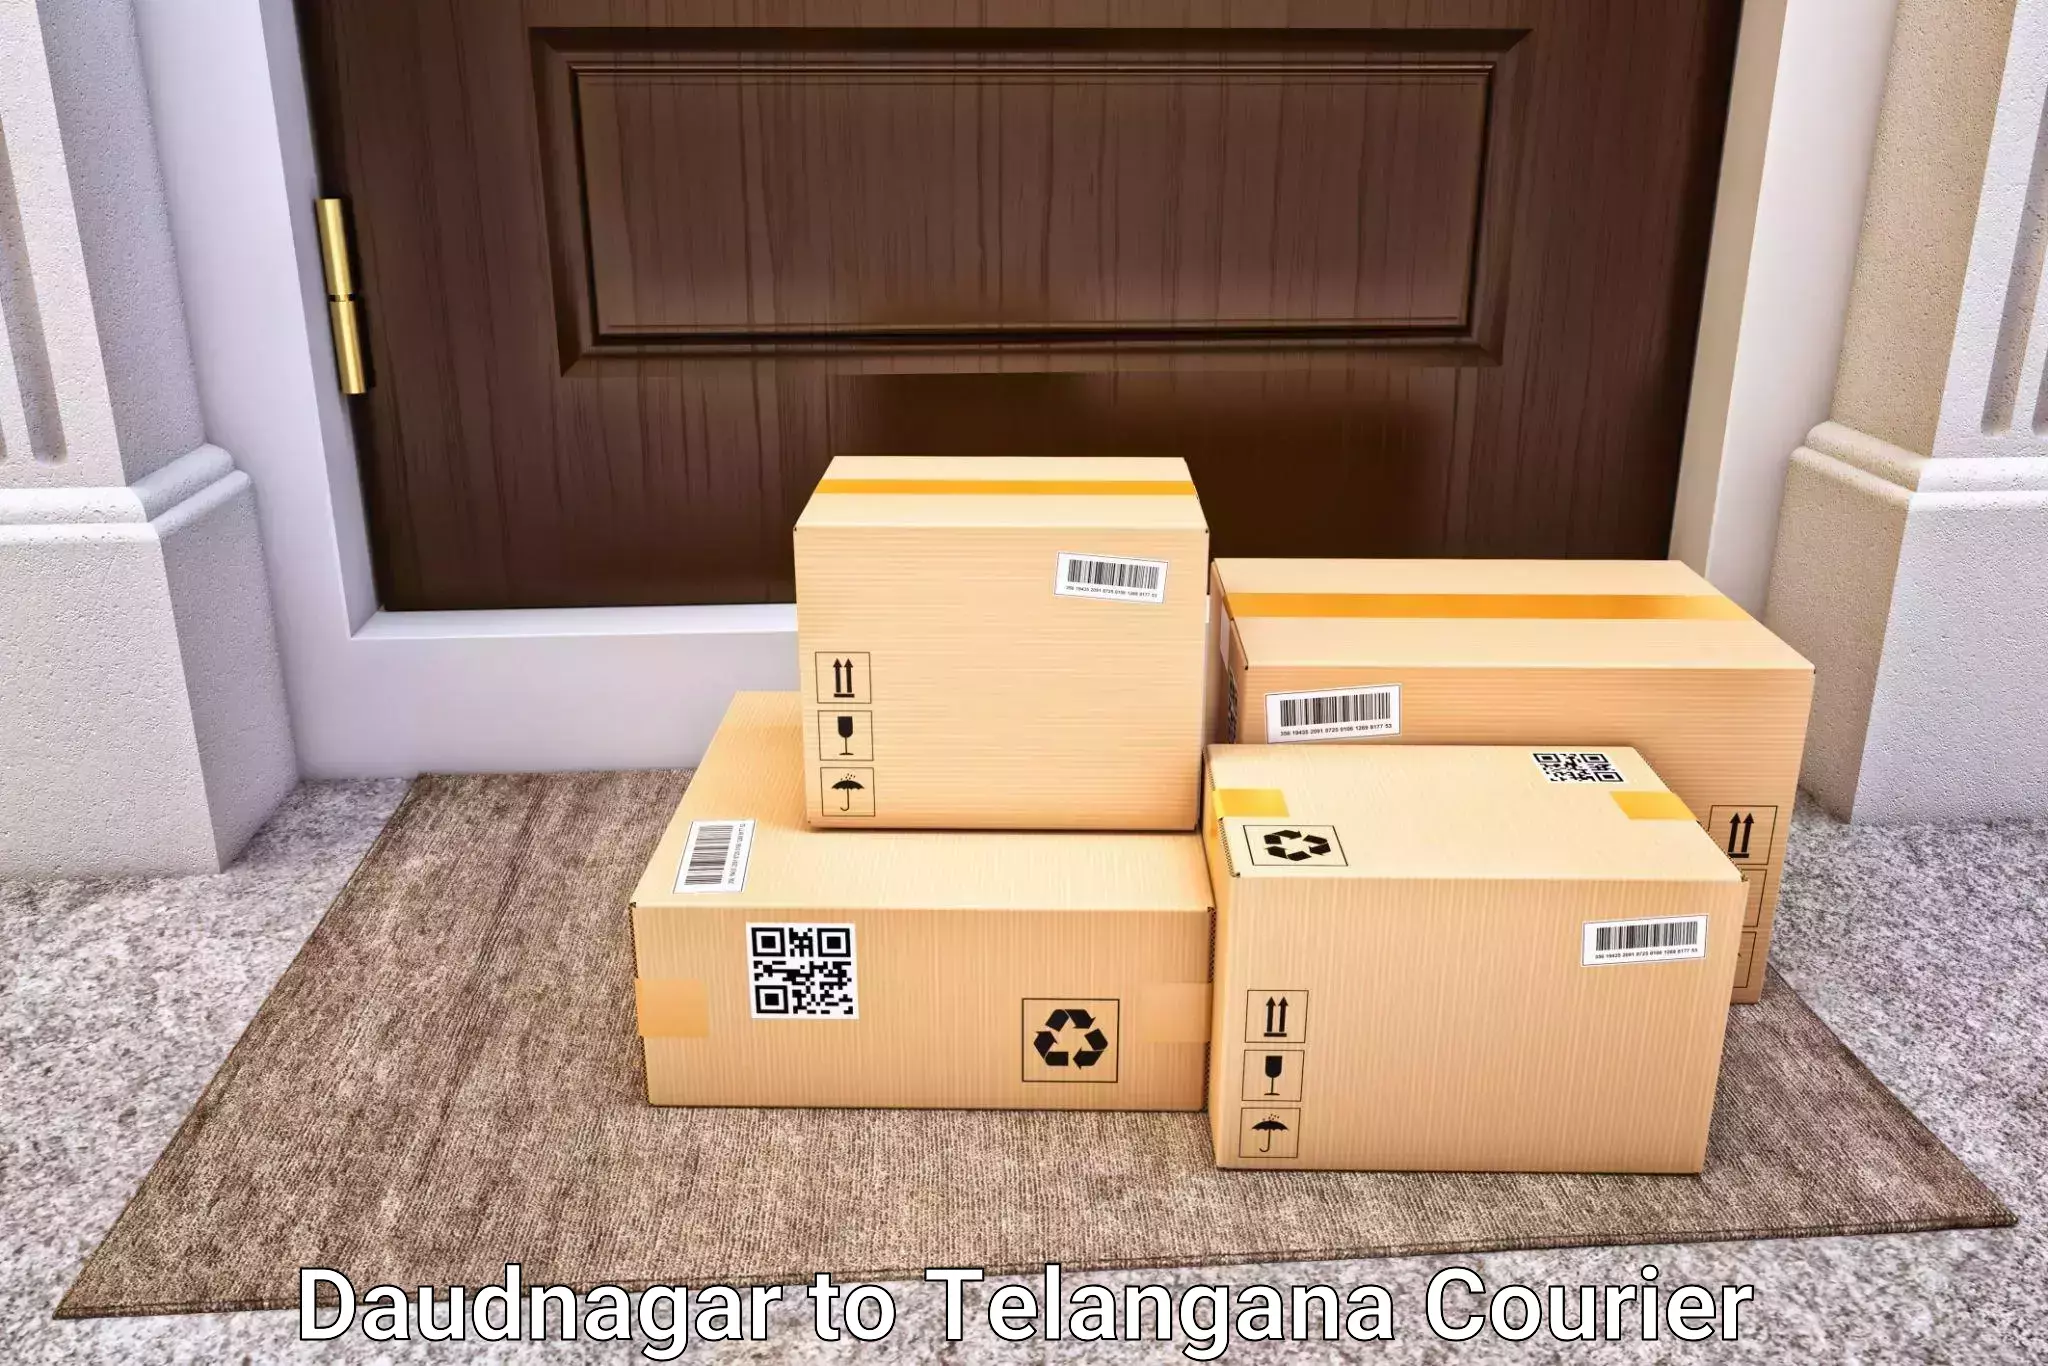 Luggage delivery app Daudnagar to Devarakonda